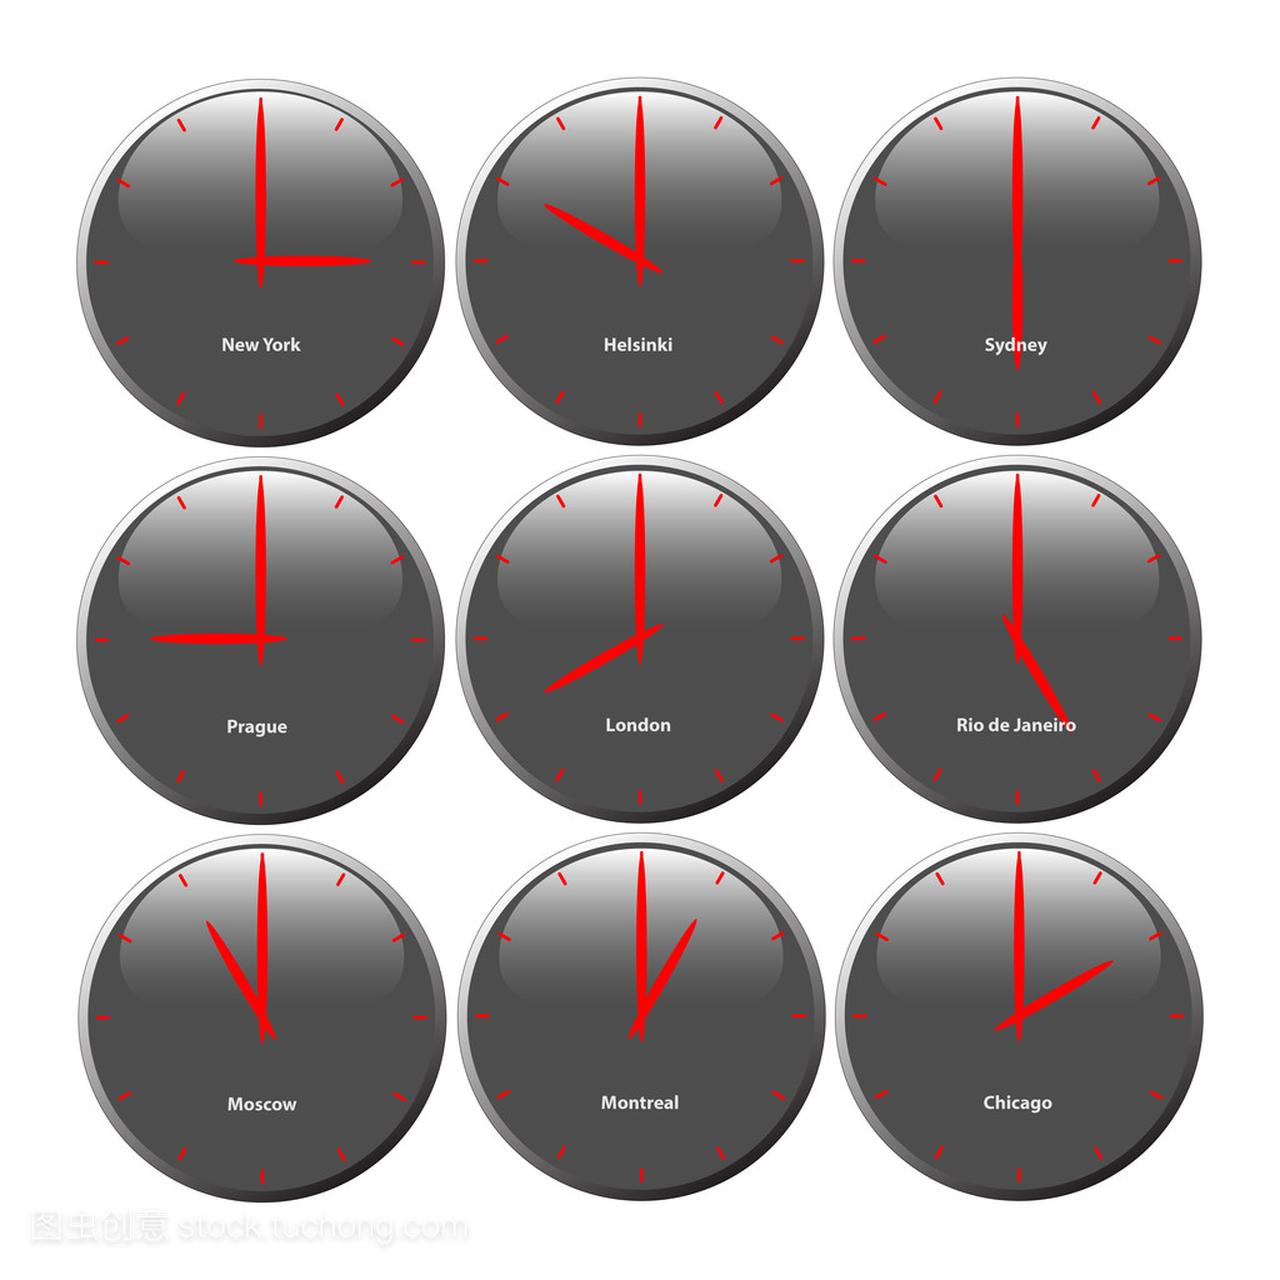 灰色的时钟与光滑区域显示世界时间,红色